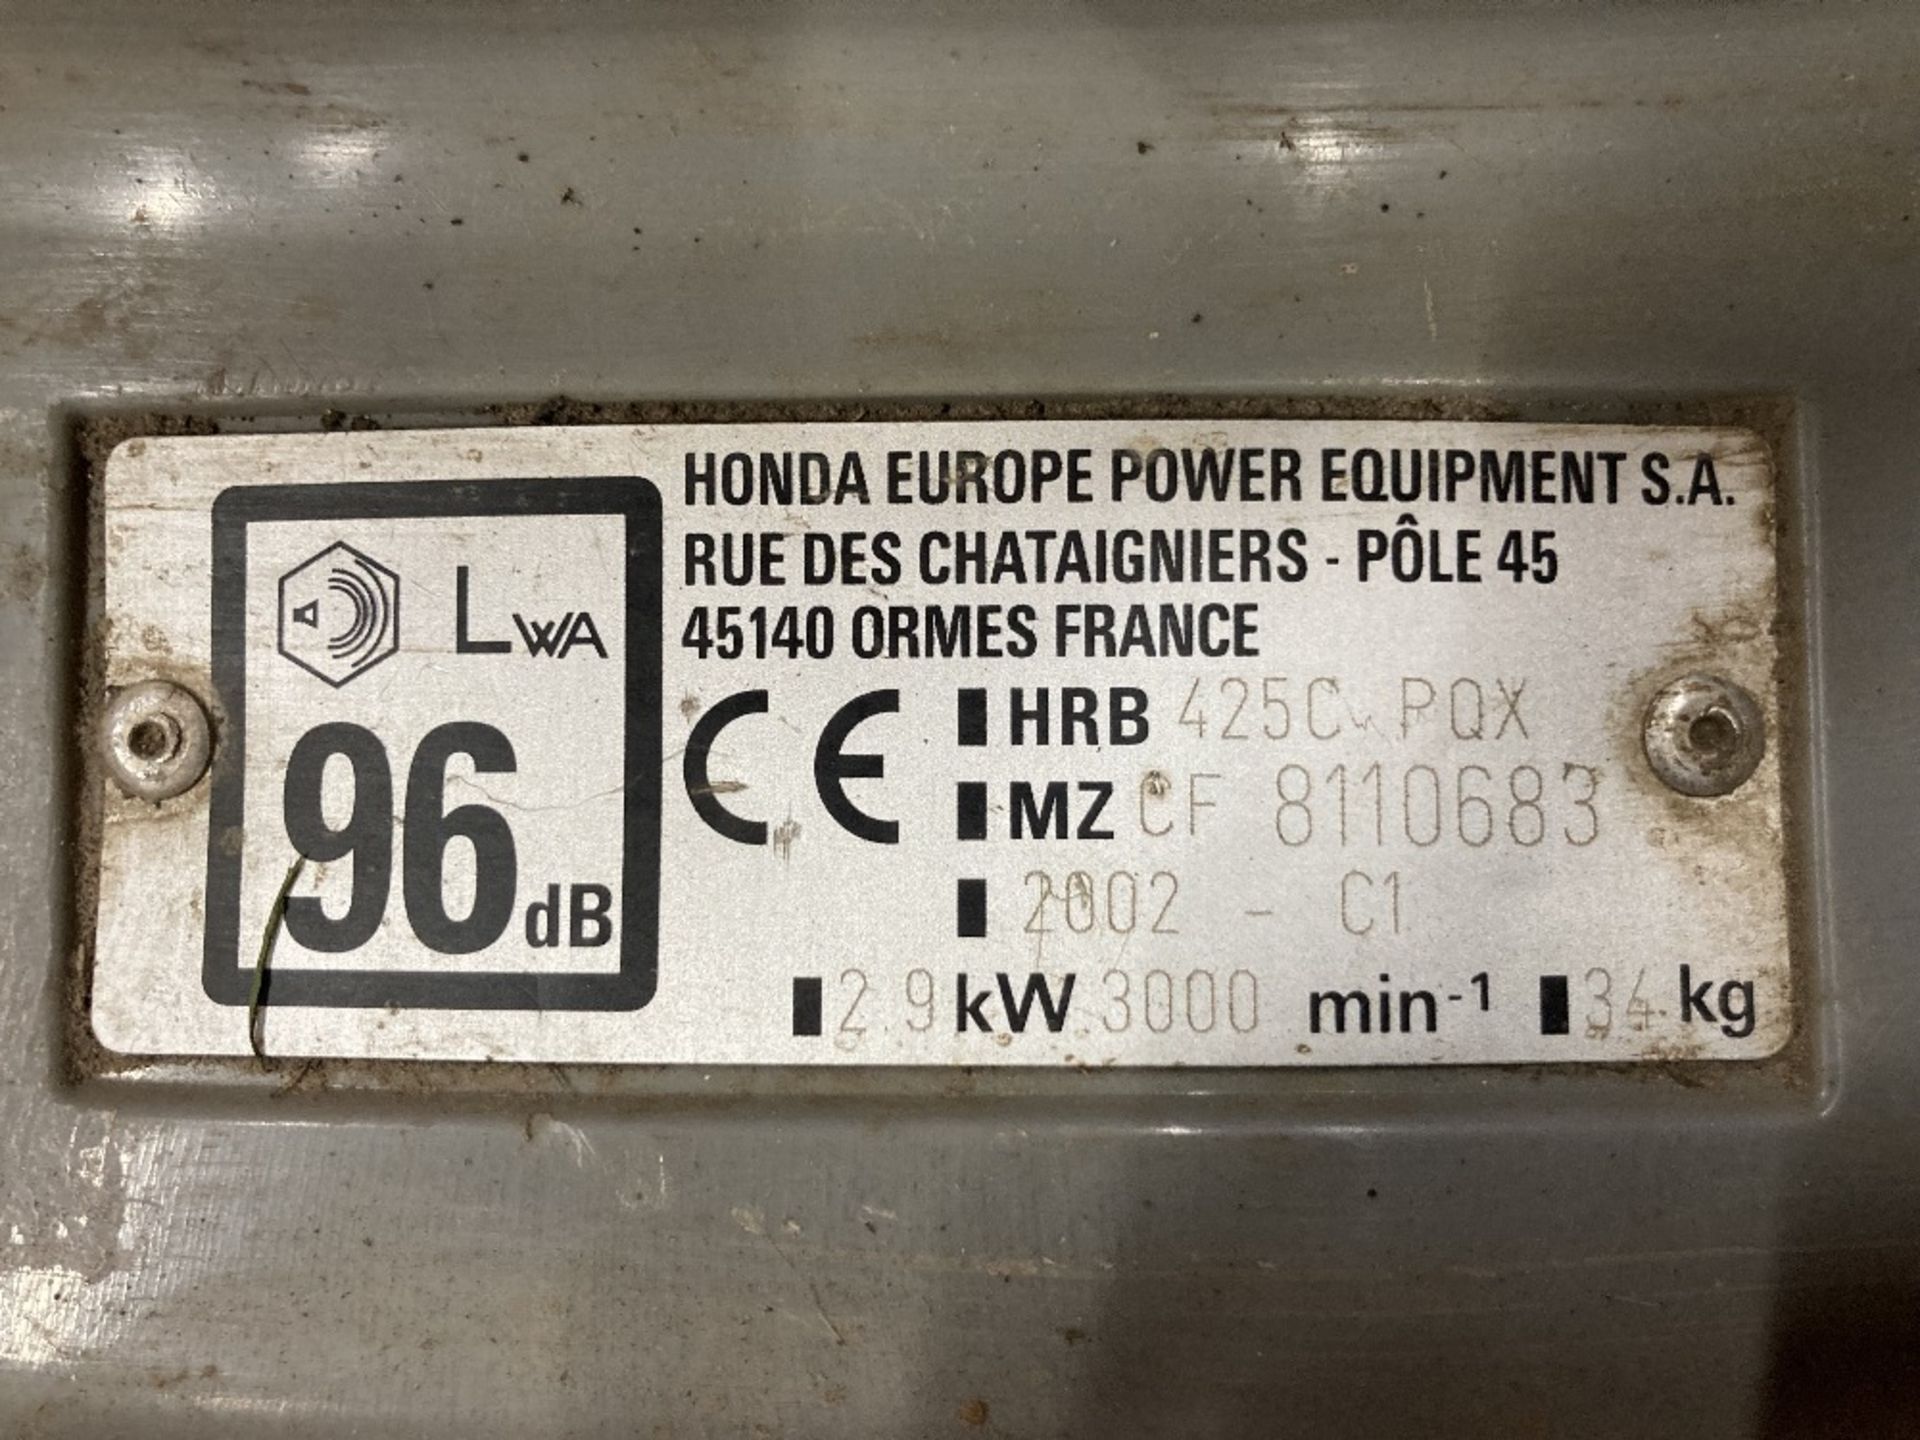 Honda HRB 425C POX Rotary Lawn Mower - Image 5 of 5